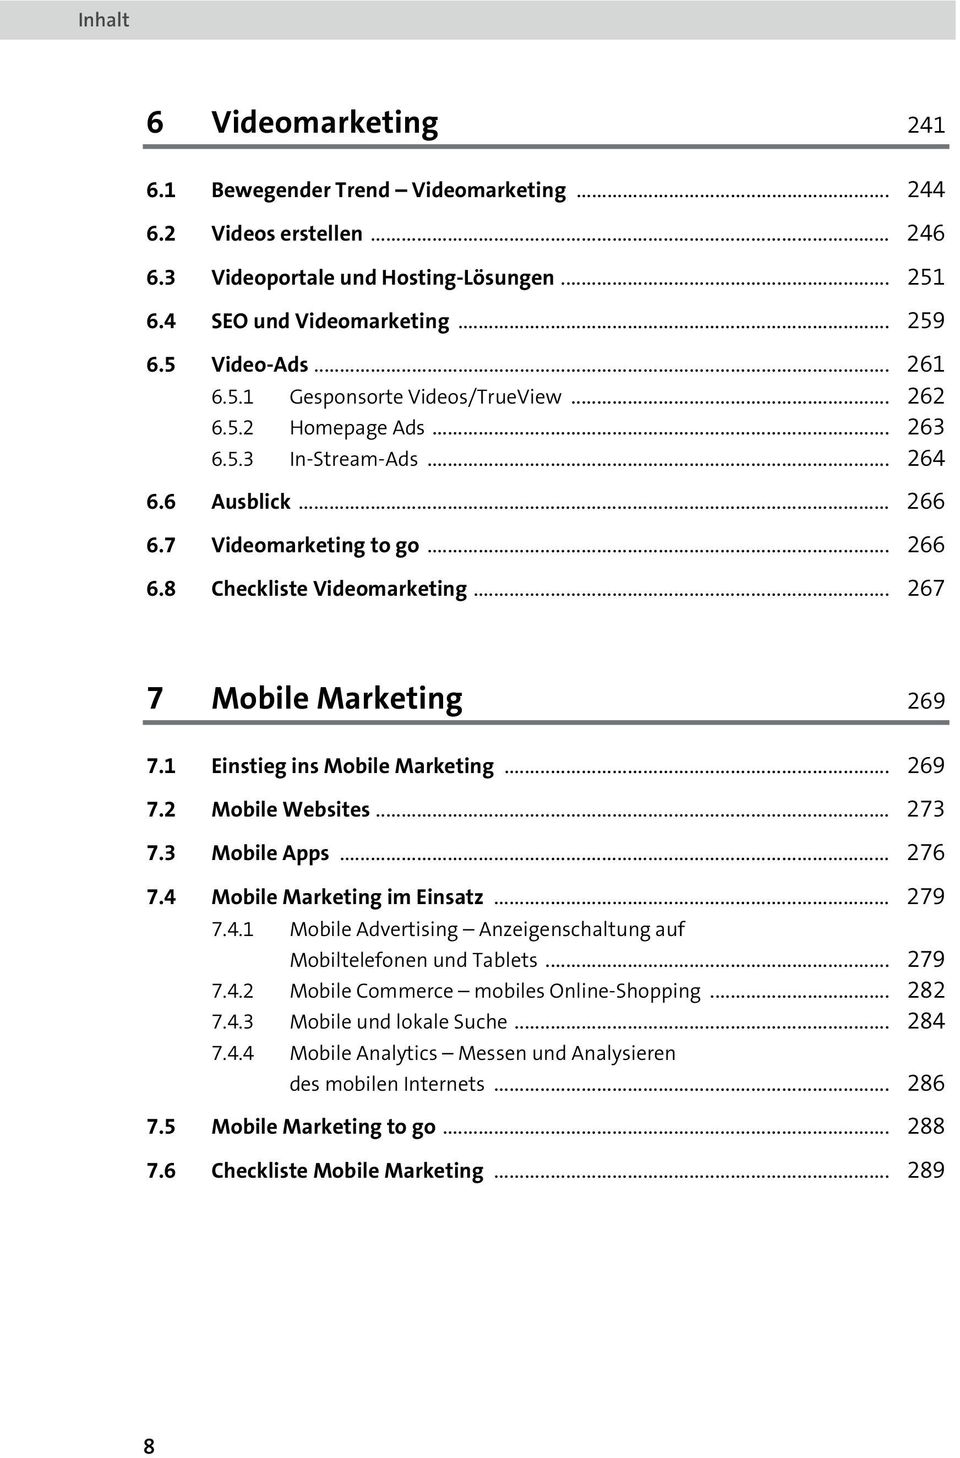 1 Einstieg ins Mobile Marketing... 269 7.2 Mobile Websites... 273 7.3 Mobile Apps... 276 7.4 Mobile Marketing im Einsatz... 279 7.4.1 Mobile Advertising Anzeigenschaltung auf Mobiltelefonen und Tablets.